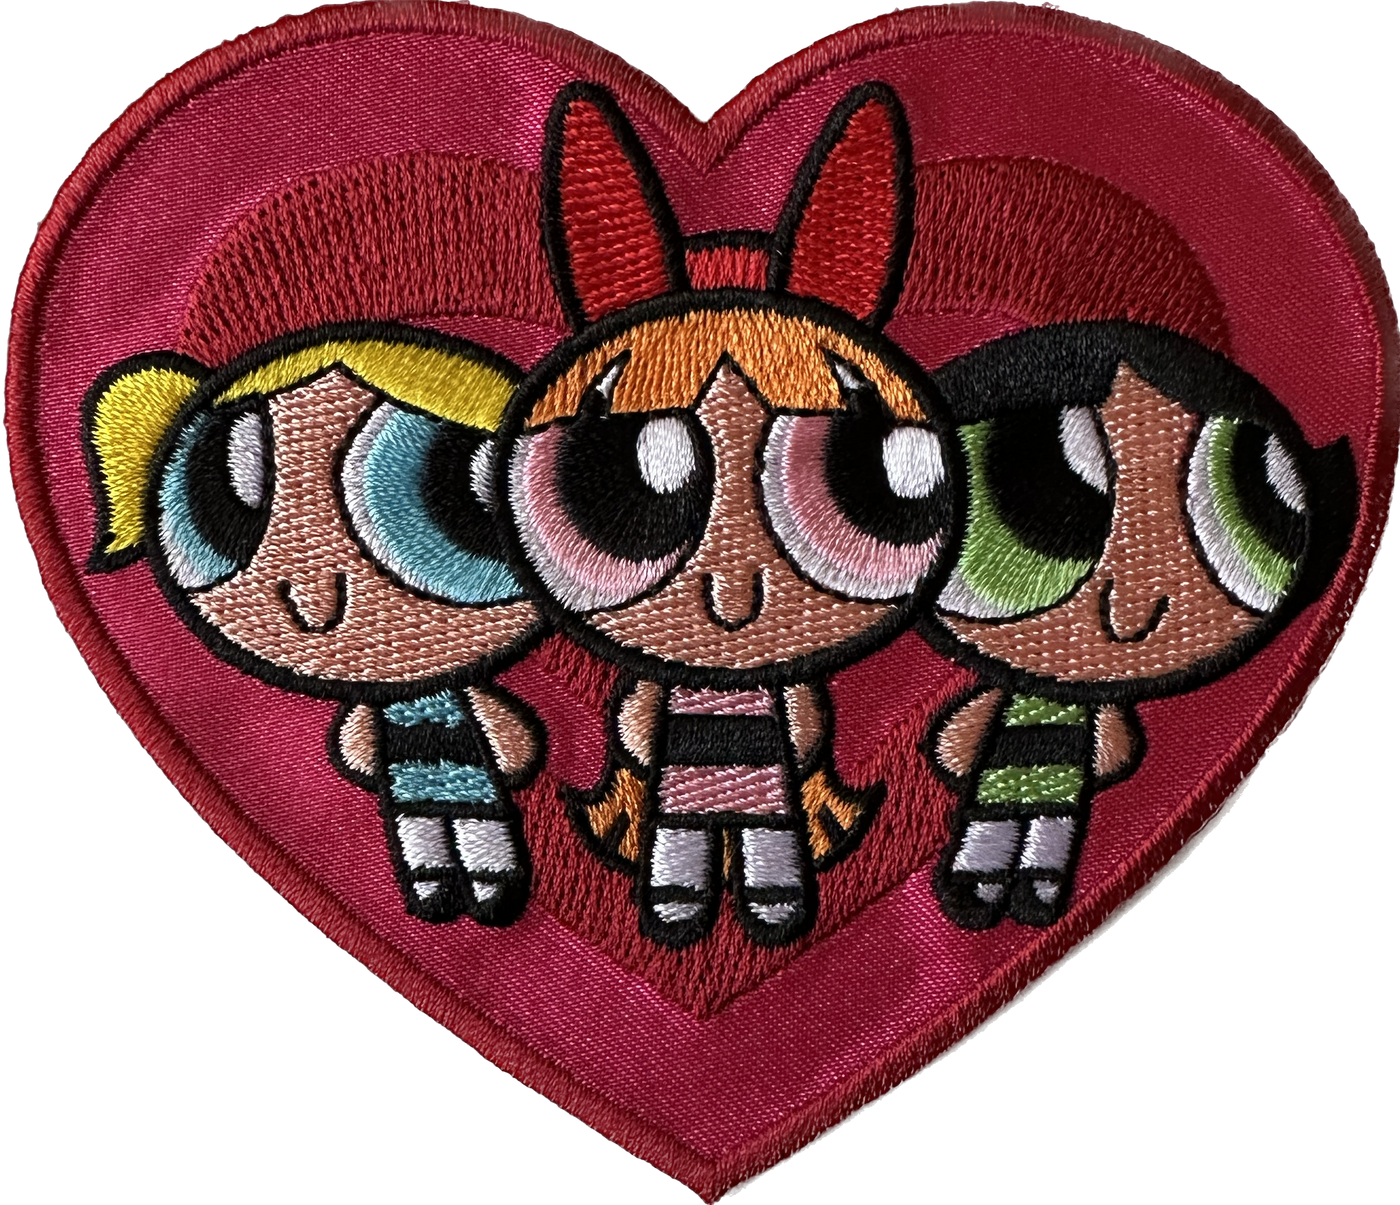 Powerpuff Girls on Heart Patch